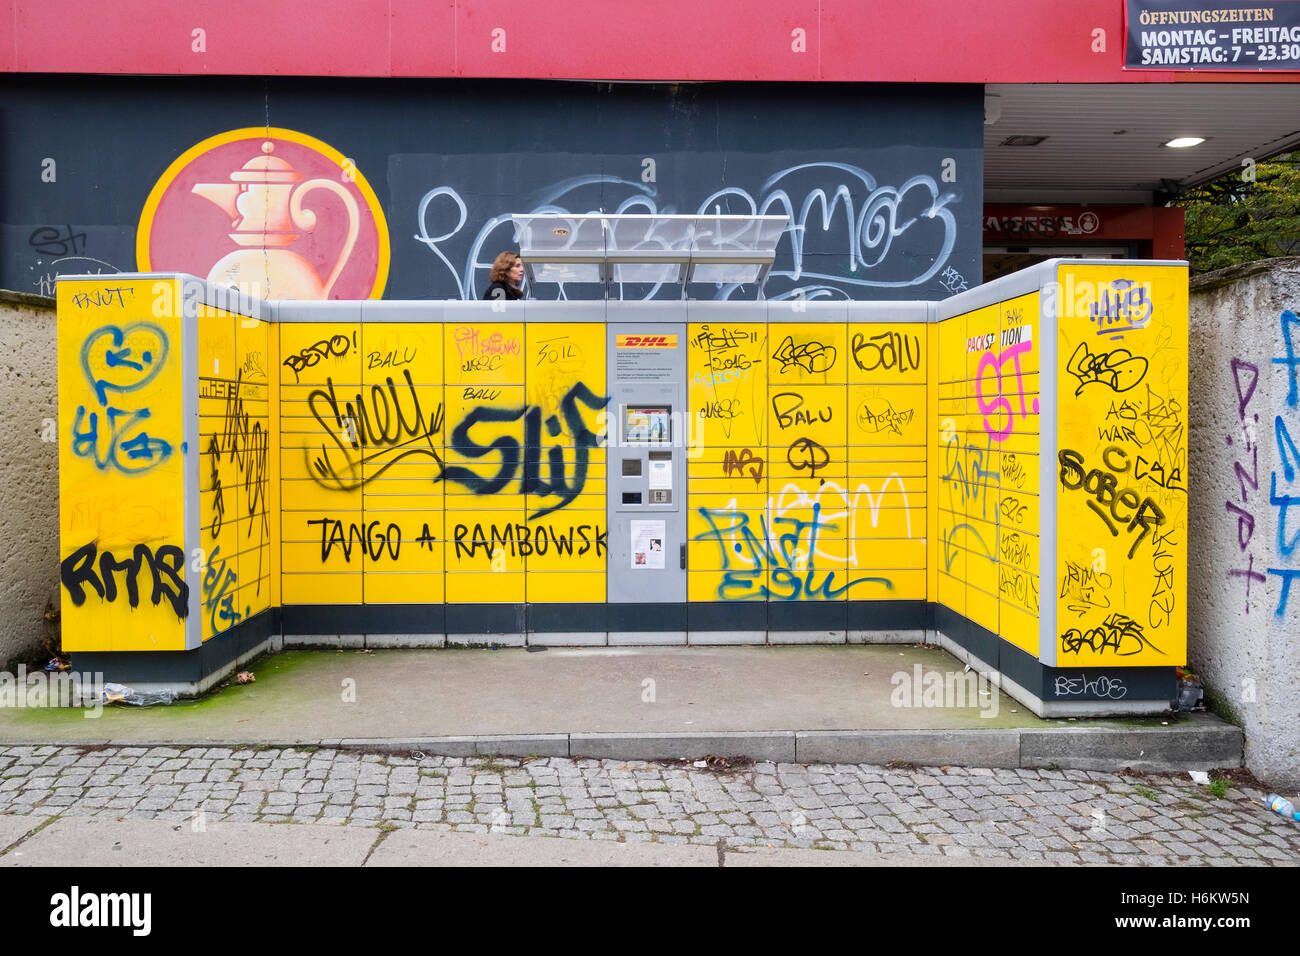 DHL self service parcel cadere gli armadietti coperto di graffiti a Berlino Germania Foto Stock